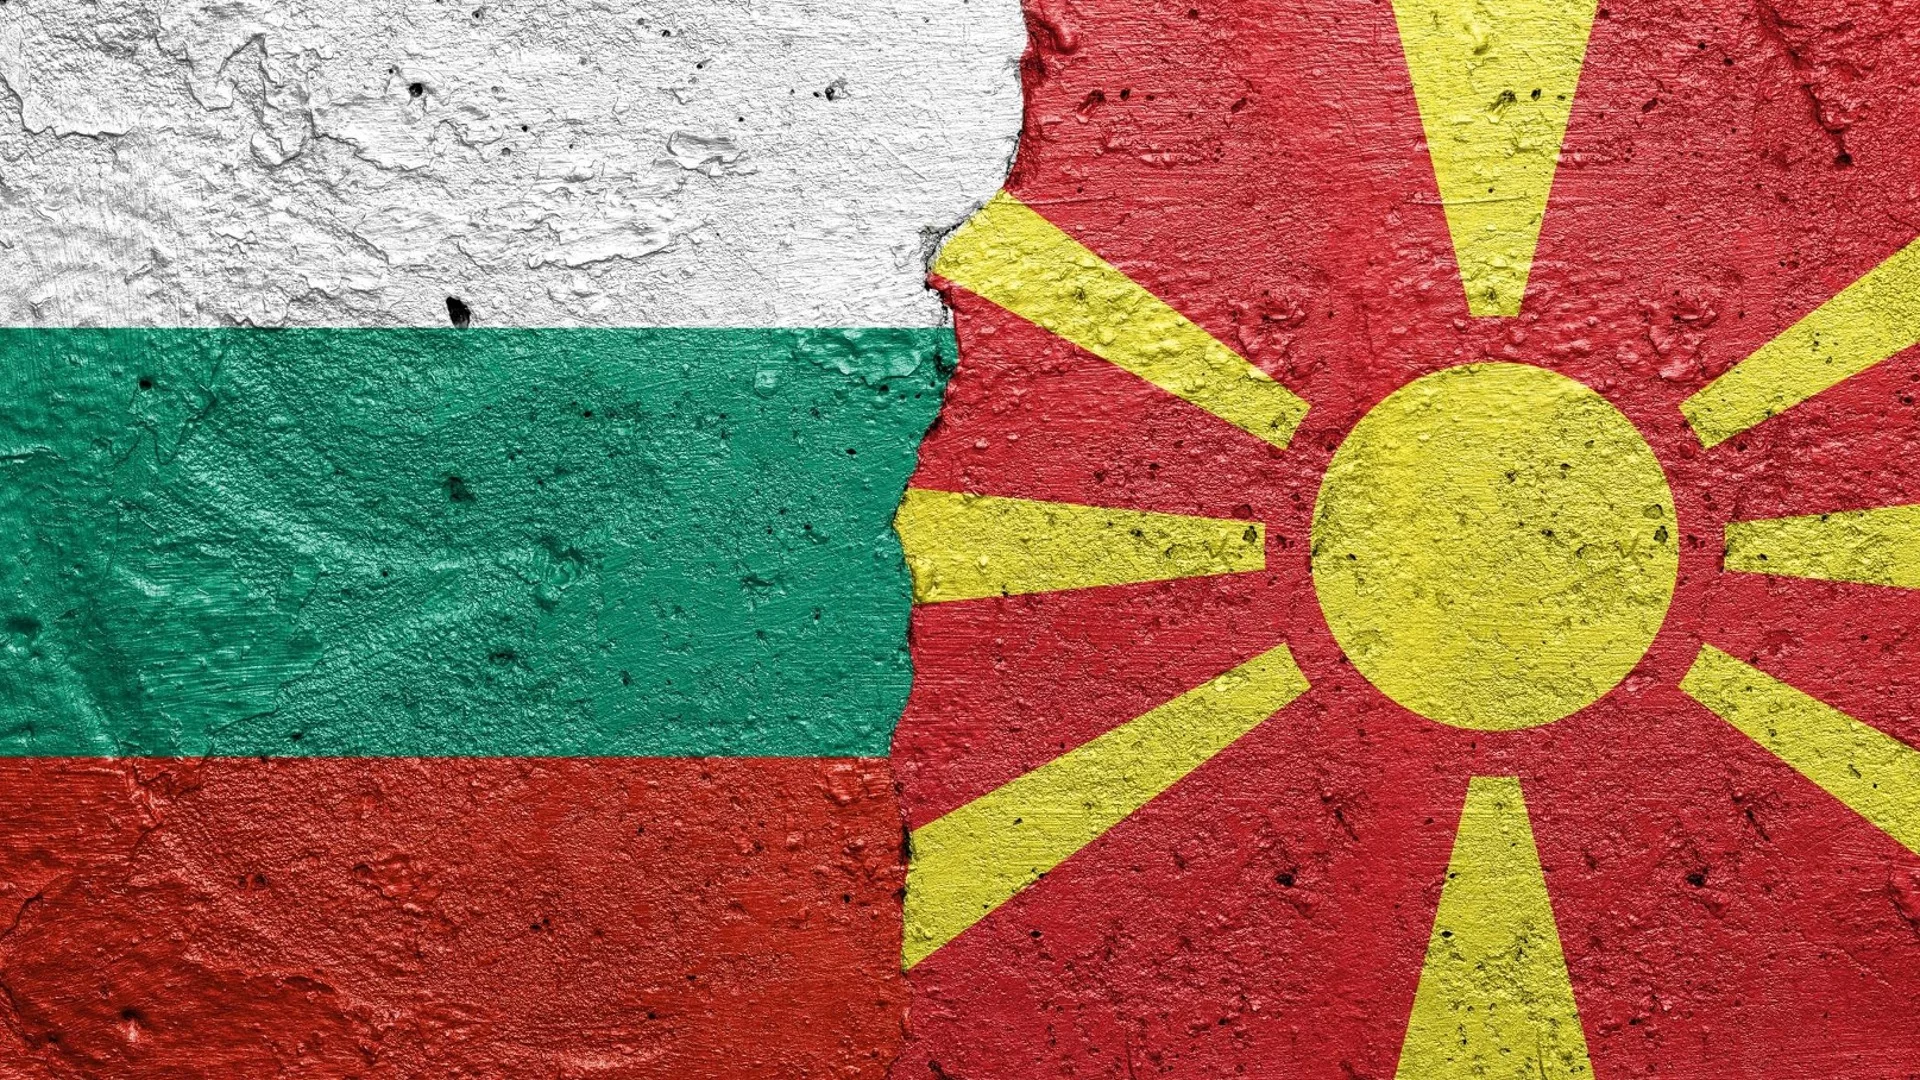 Мицкоски чака правителство в България, иска промяна на Преговорната рамка